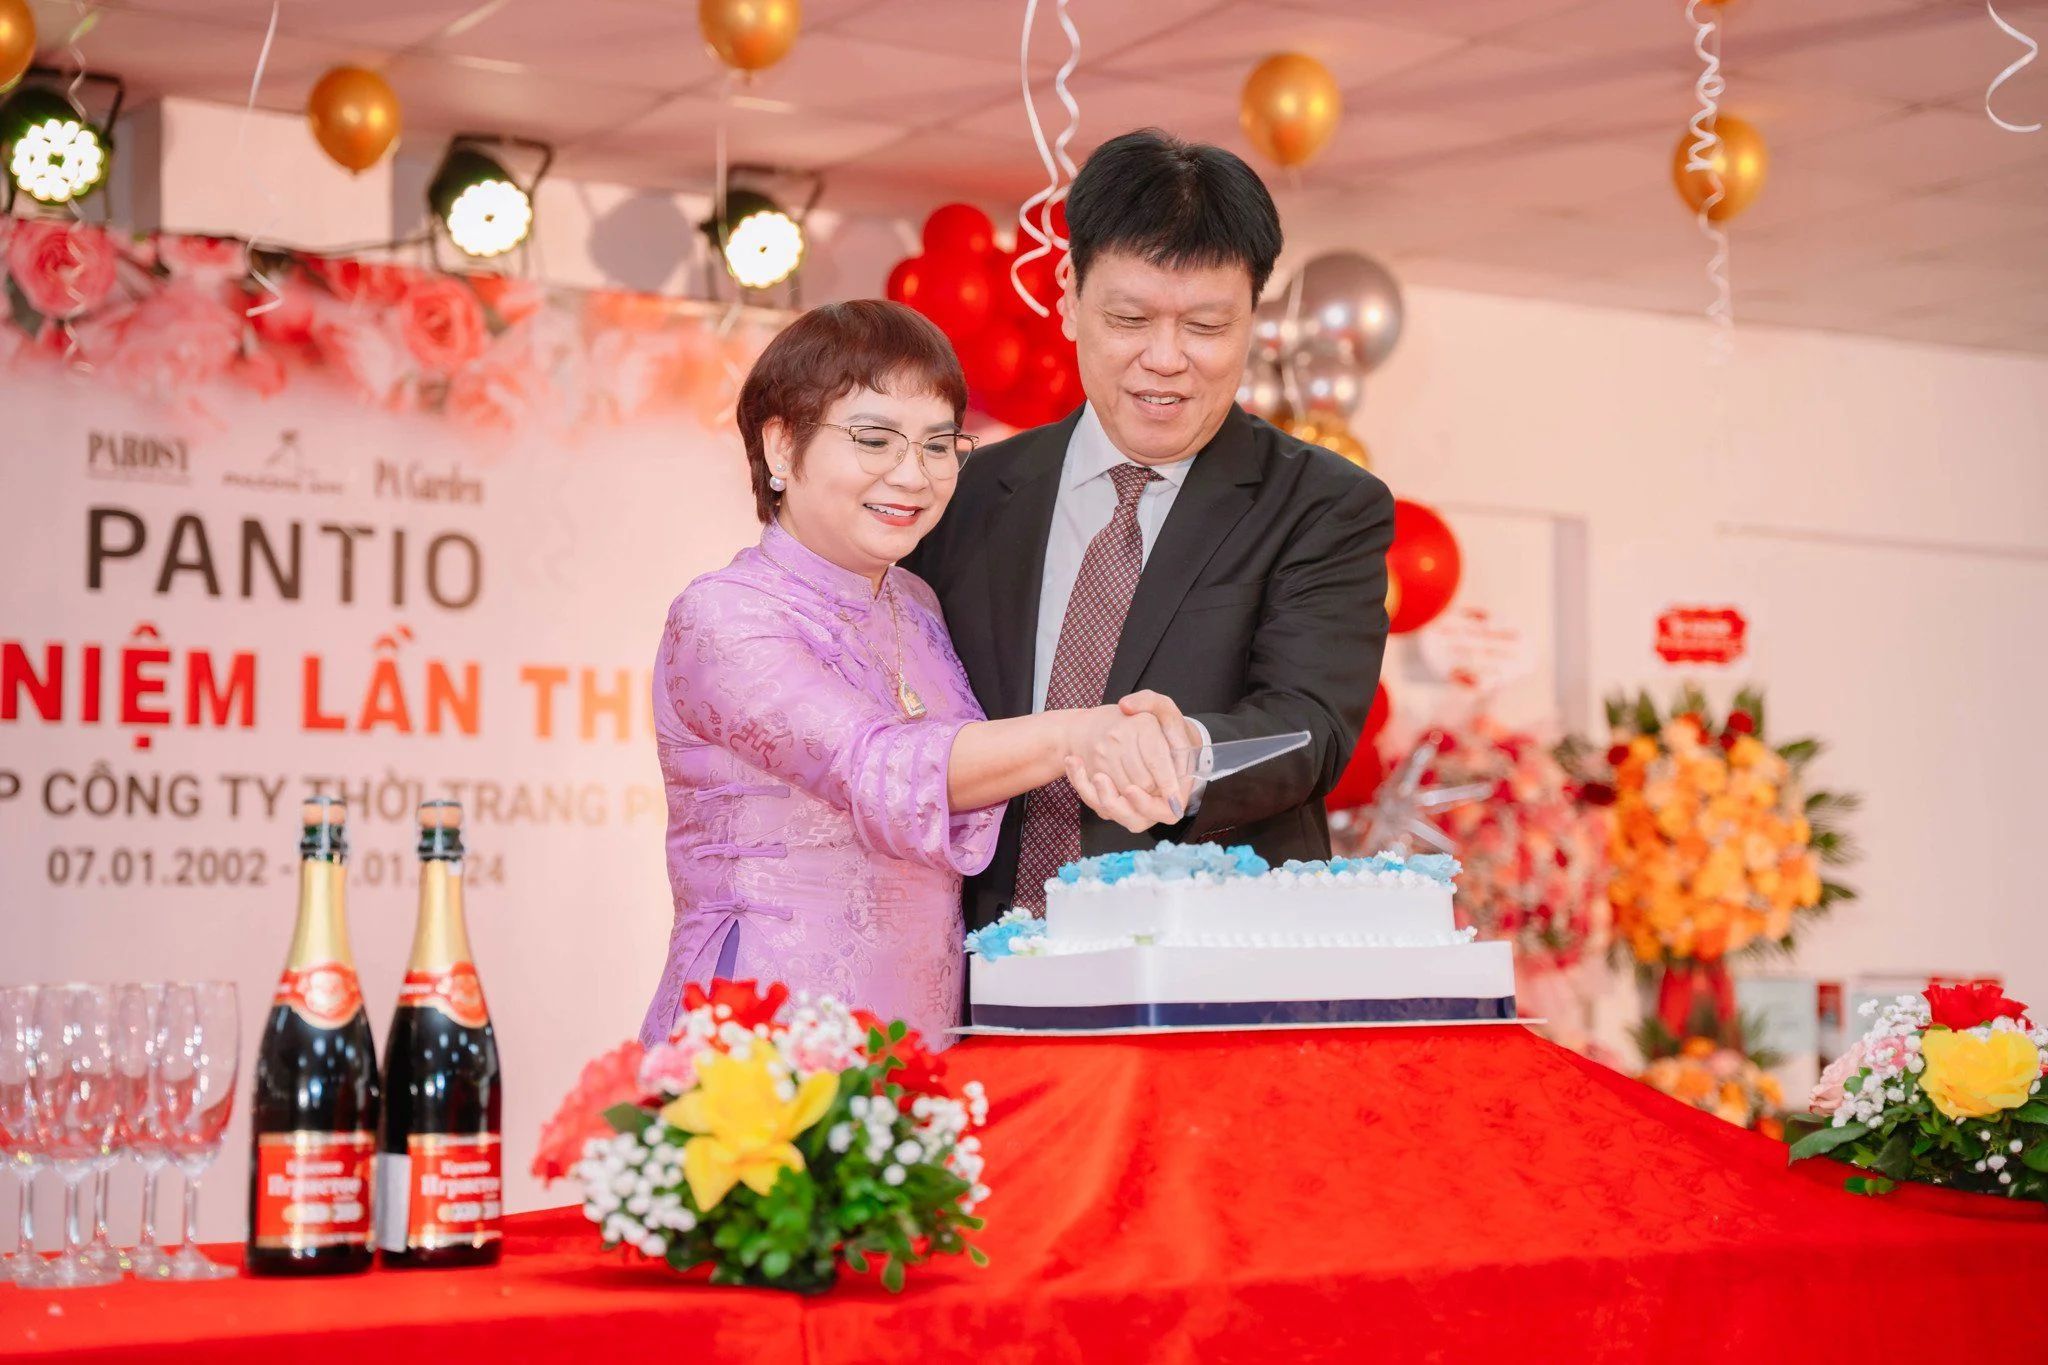 TGĐ Mai Phượng Anh và Chủ tịch HĐQT Nguyễn Đỗ Kiên cắt bánh chính thức mở màn cho buổi lễ.